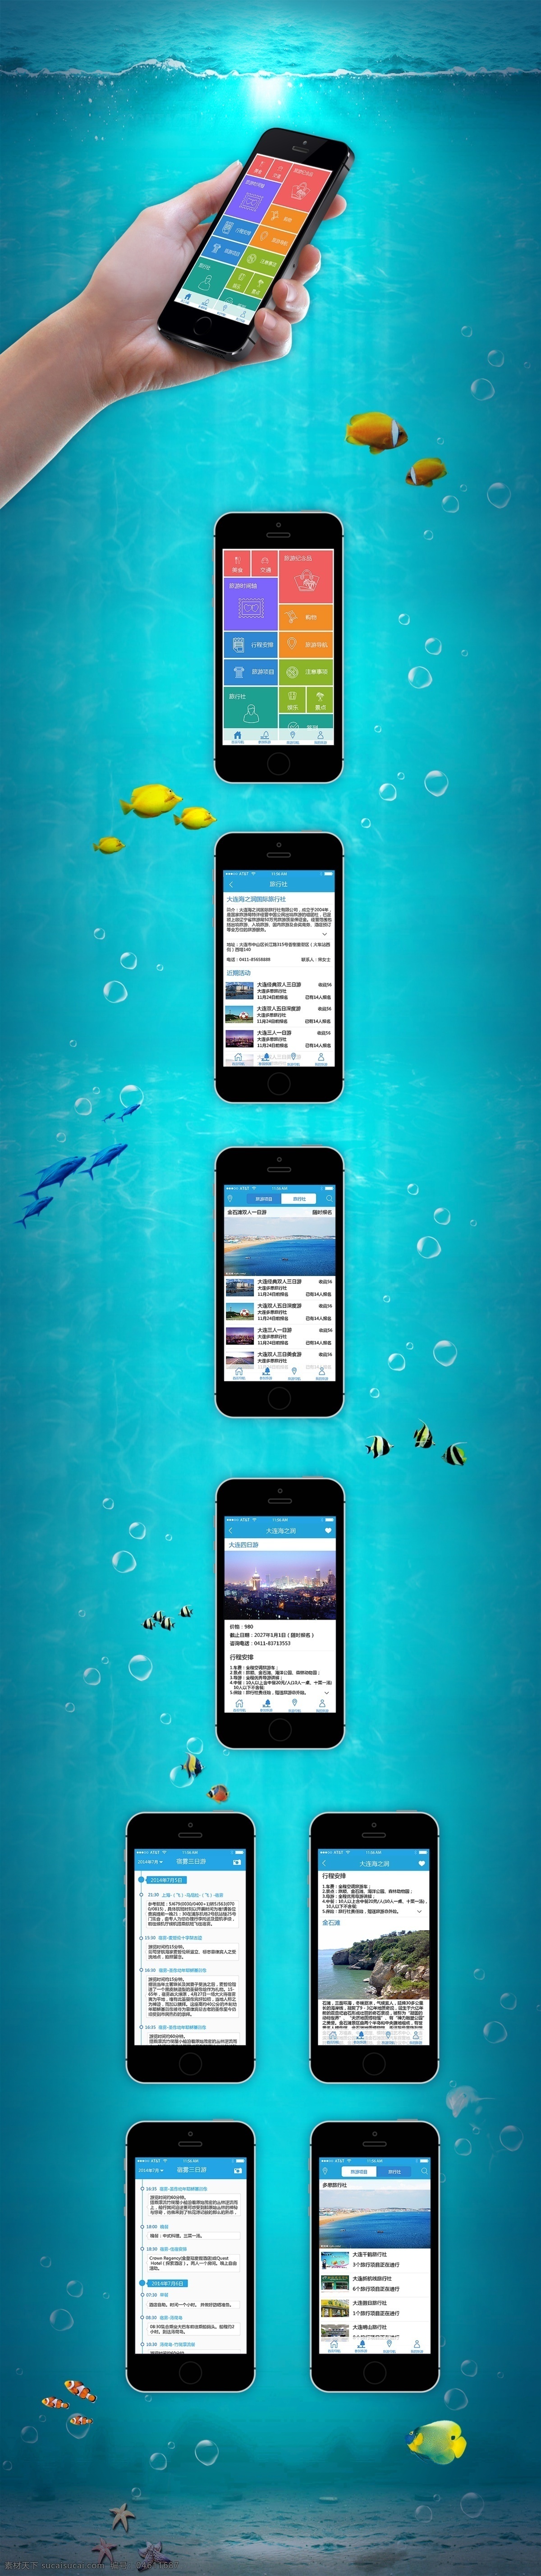 旅游 app 手机 ui 携程 iphone ios gui 扁平 展示 效果 移动端 海洋 背景 蓝色 旅游图标 样机 去哪网 青色 天蓝色